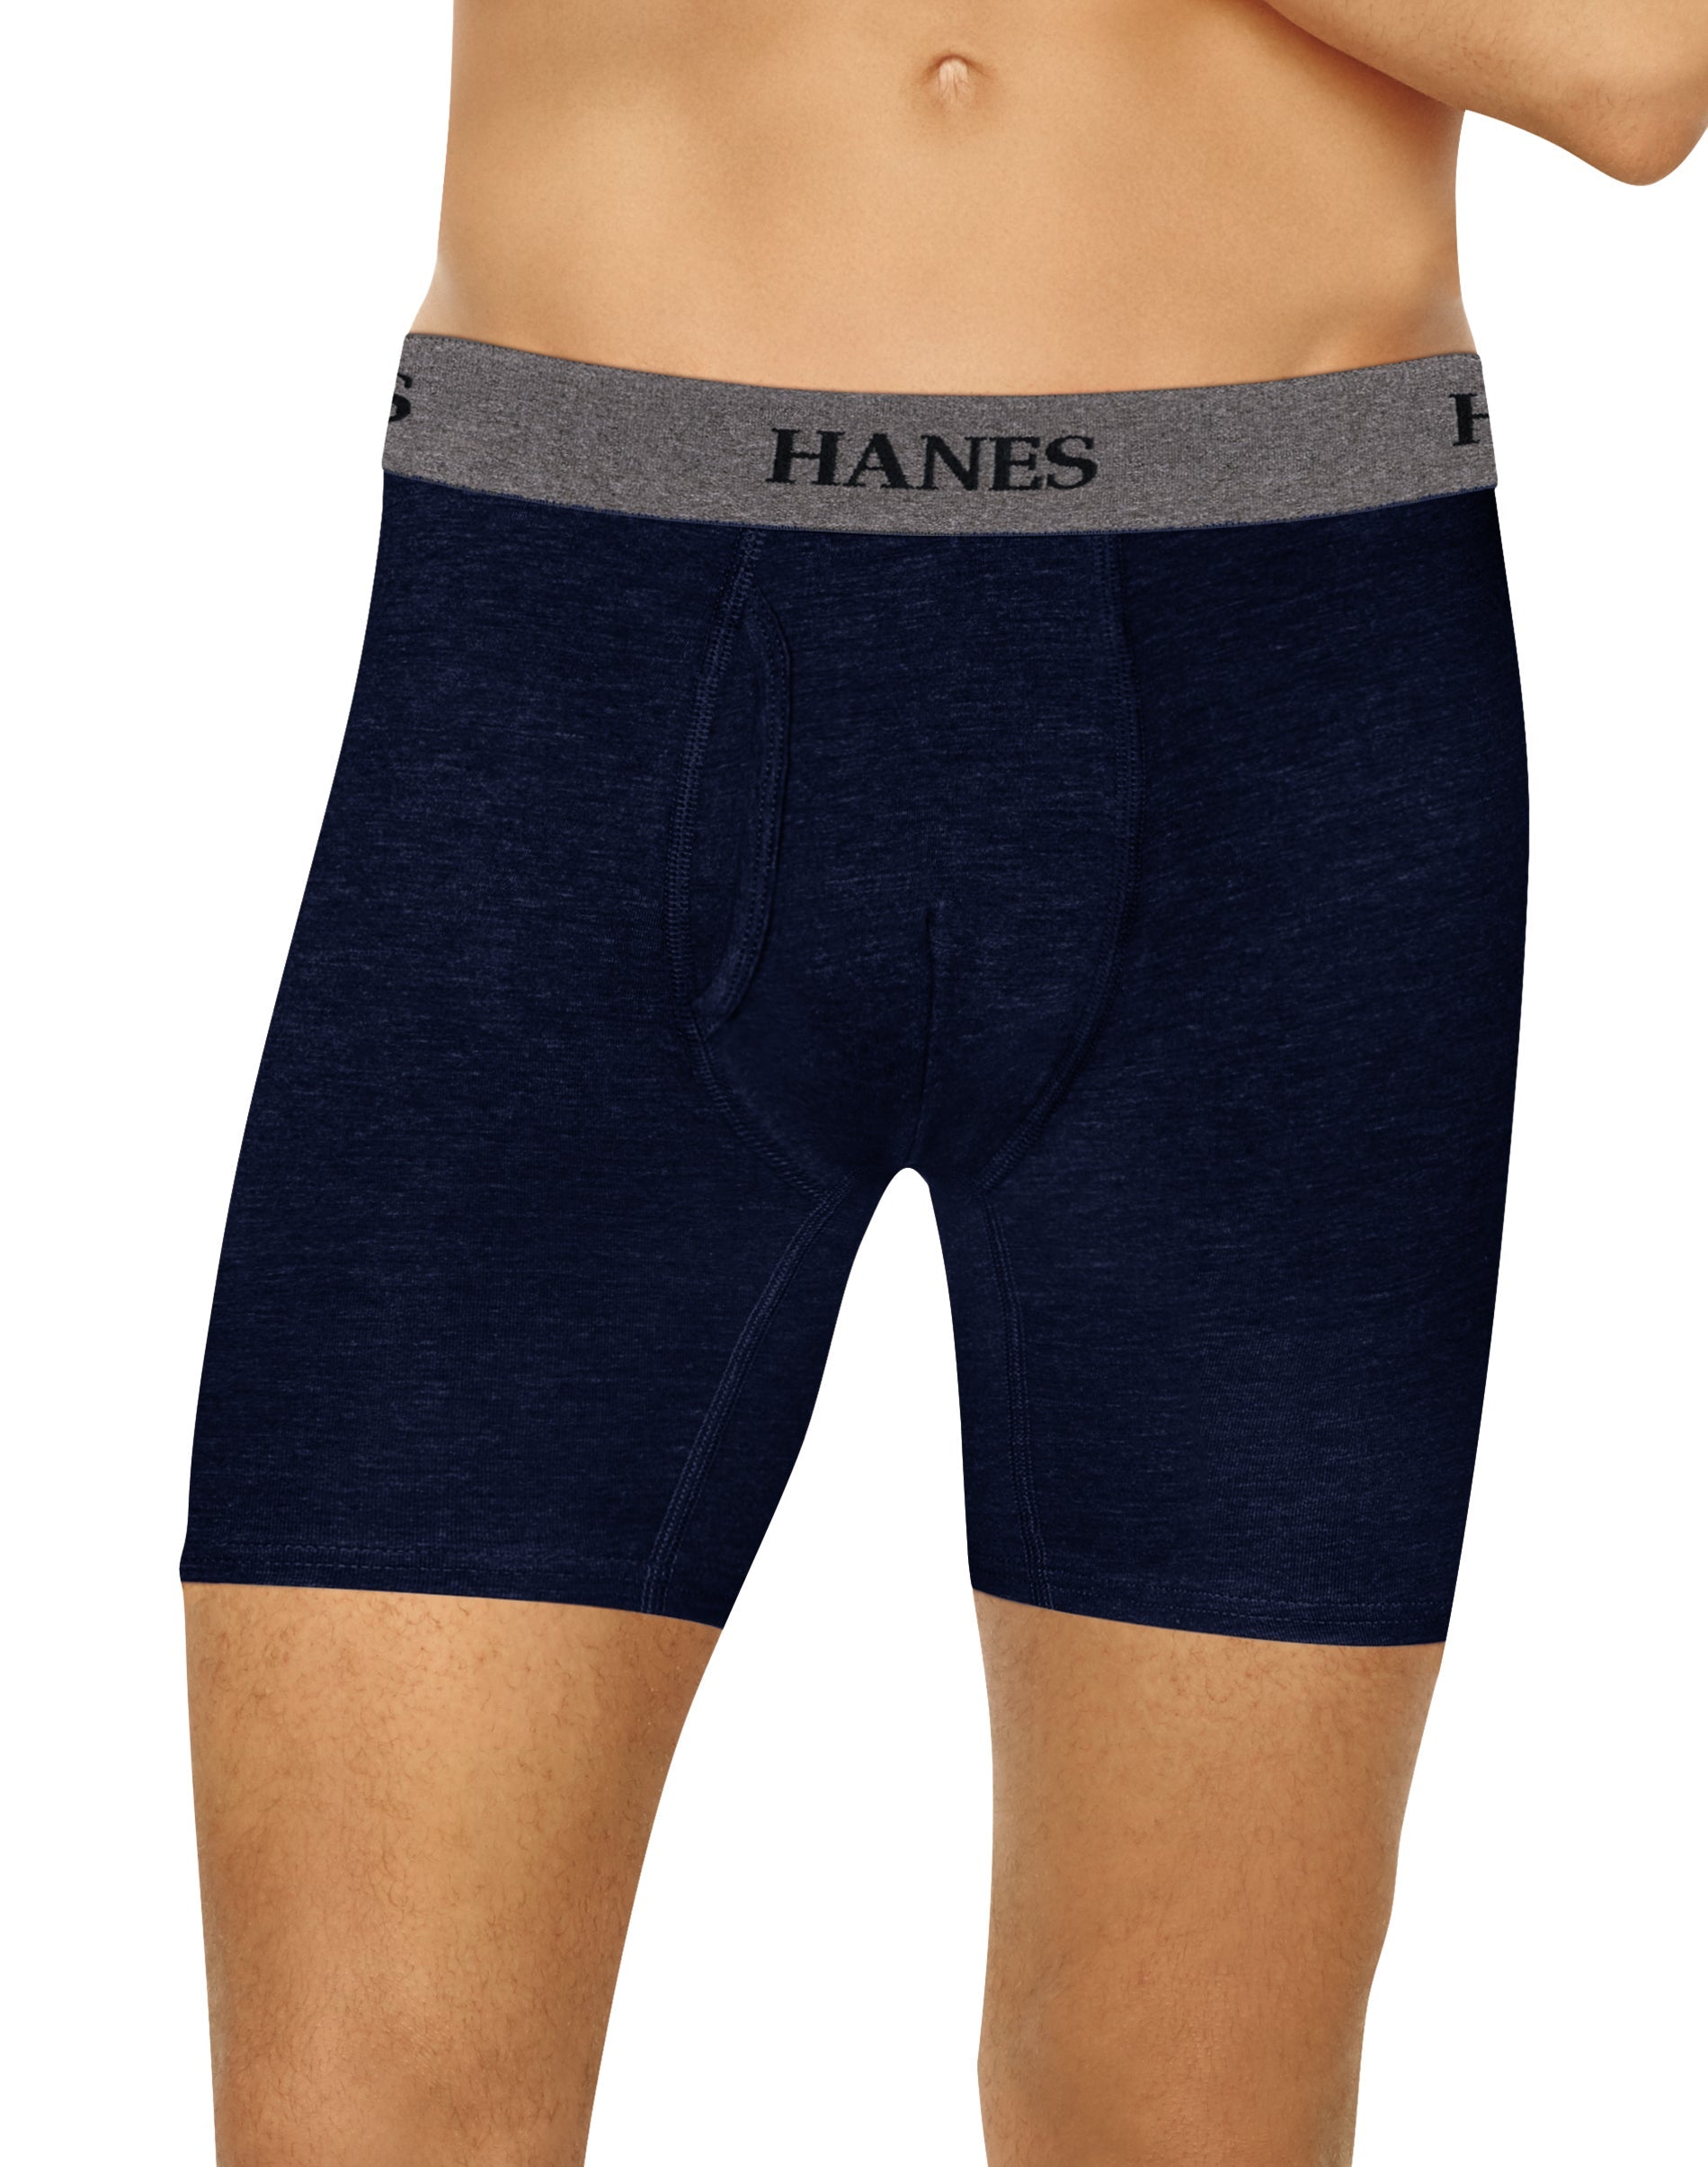 Hanes Men's Boxer Briefs Pack, Moisture-Wicking Cotton Blend Underwear  3-Pack, Odor-Control Sexy Boxer Briefs, 3-Pack